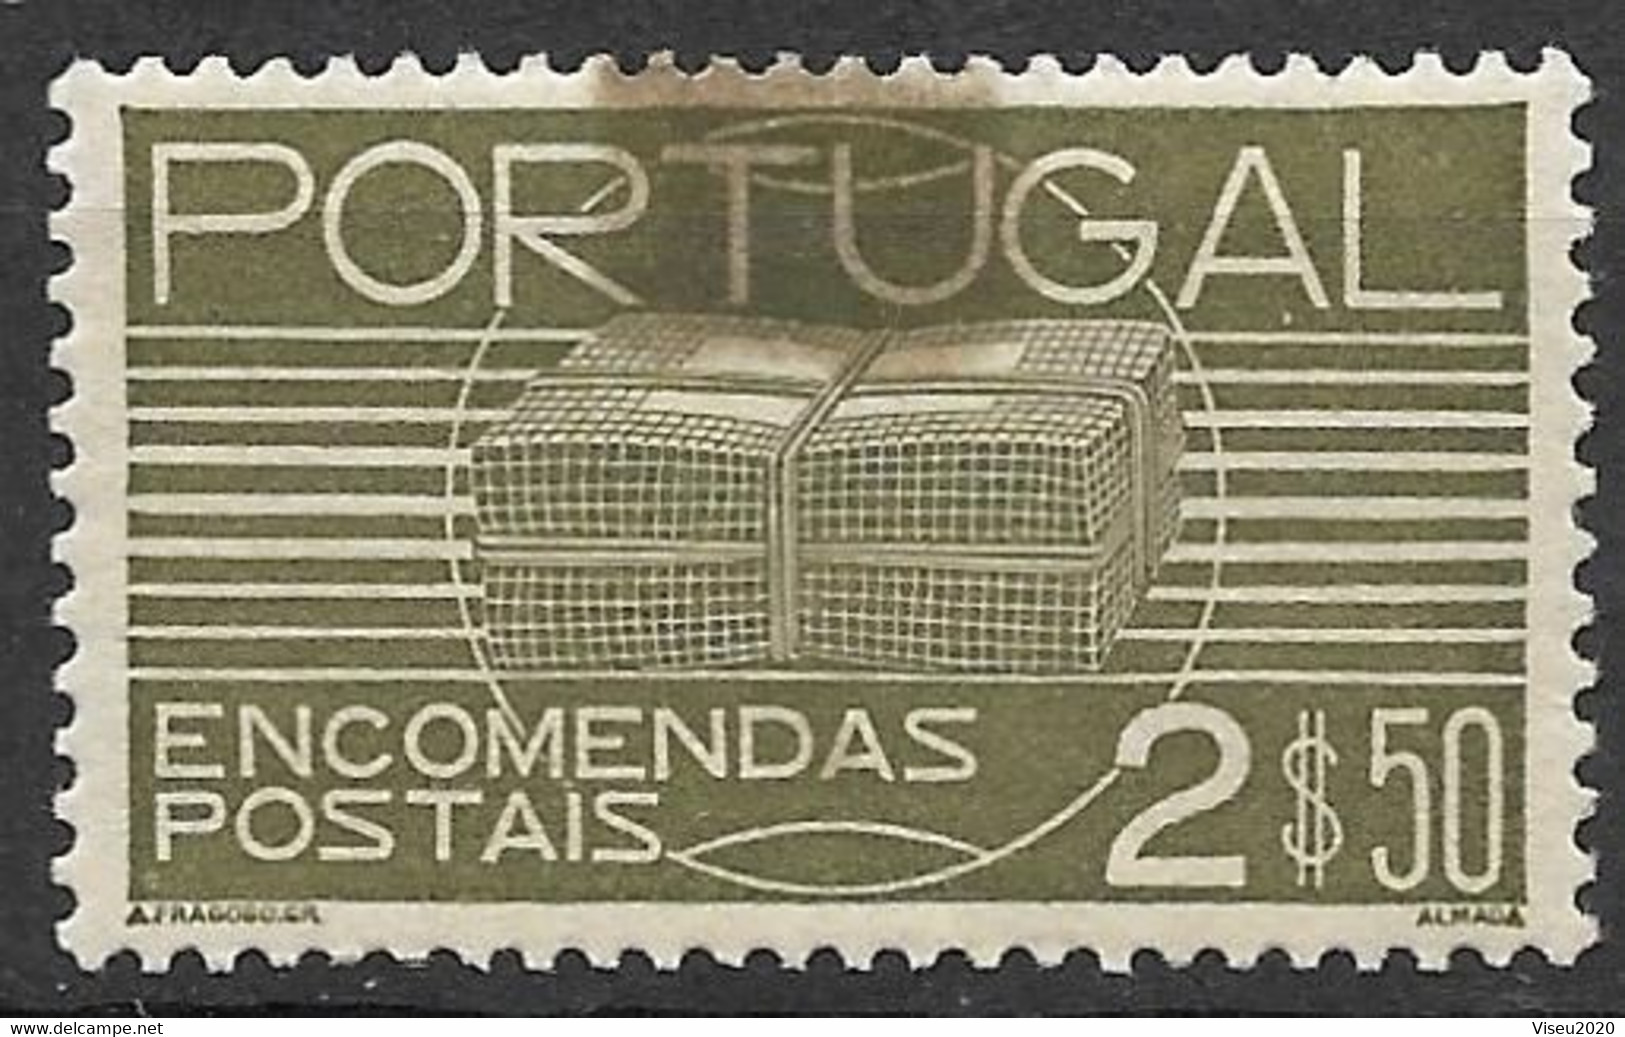 Portugal - 1936 Encomendas Postais - 2$50 - Afinsa 22 - Neufs